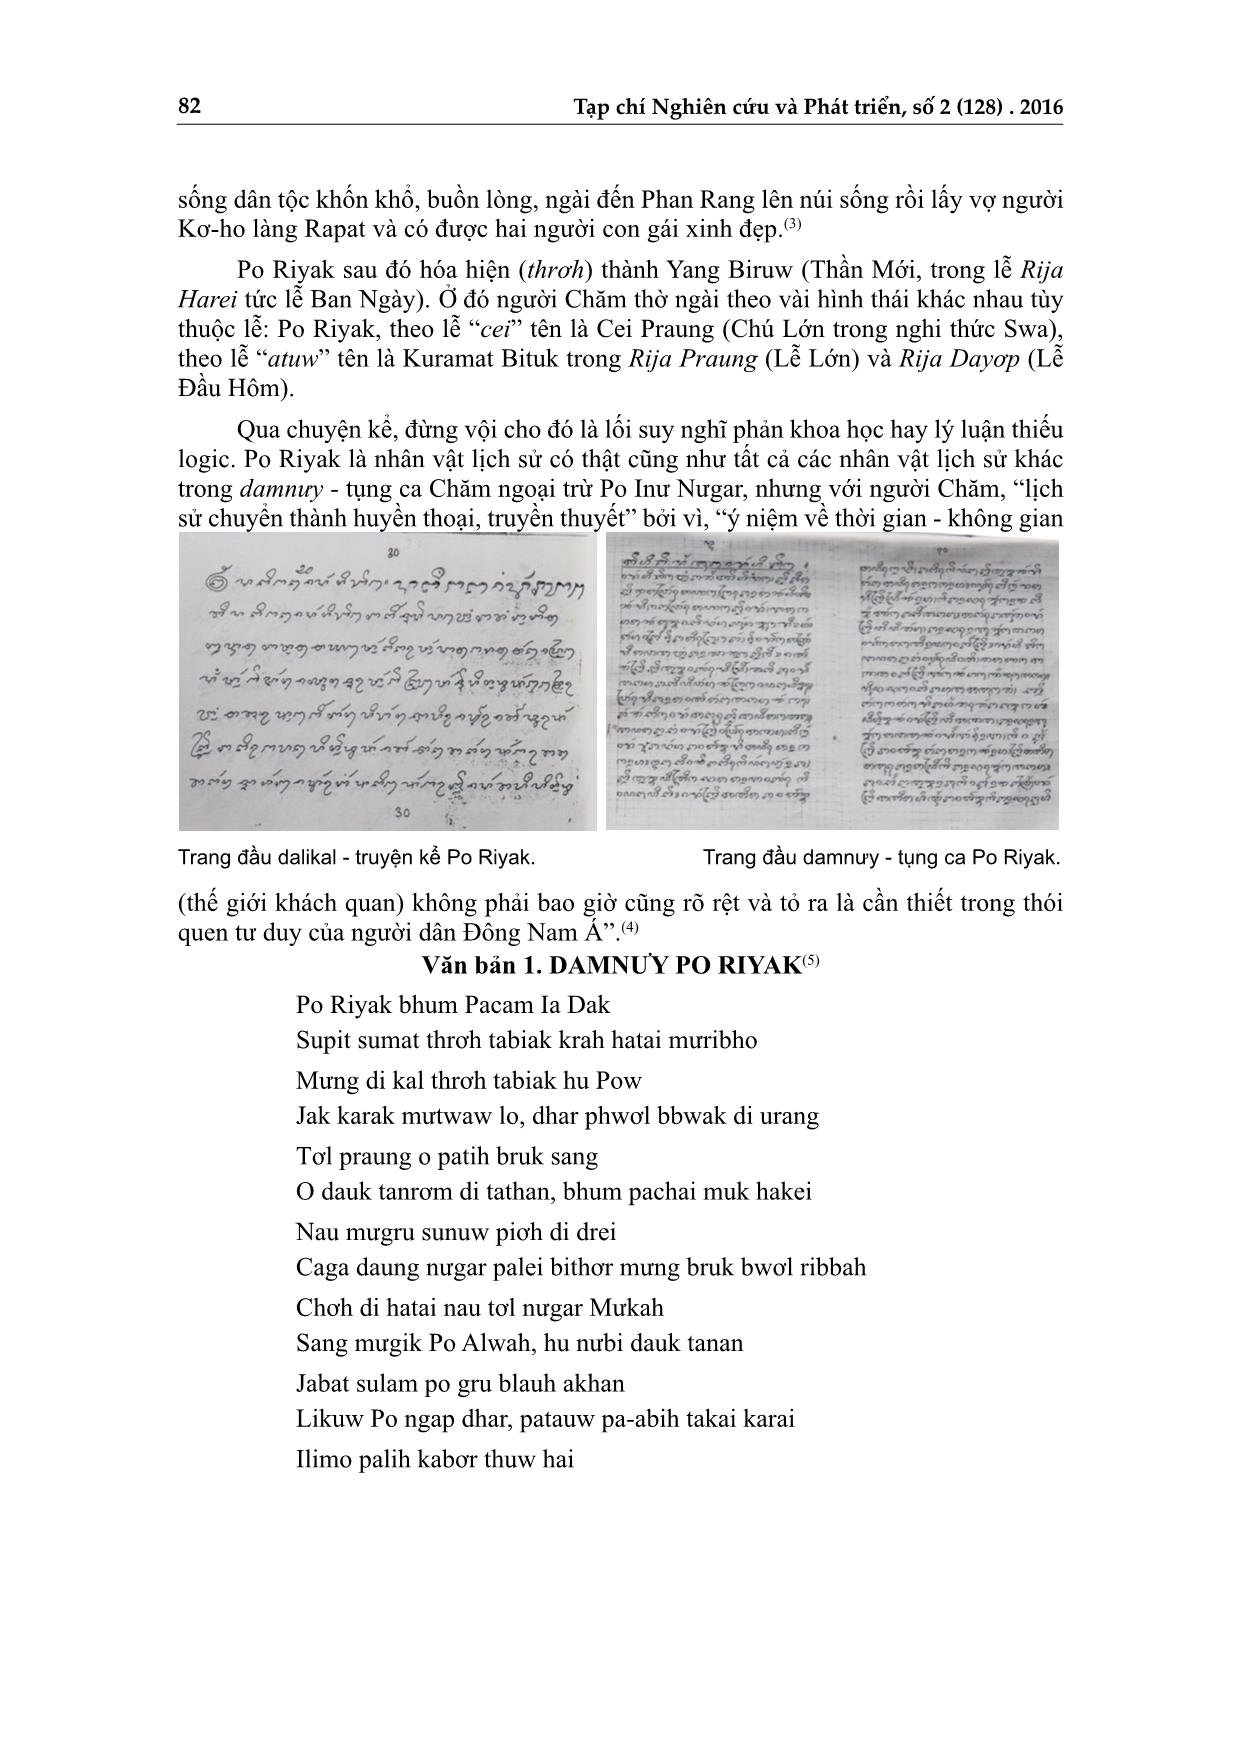 Po Riyak - Thần sóng: Lịch sử, truyền thuyết và tục thờ cúng trang 2